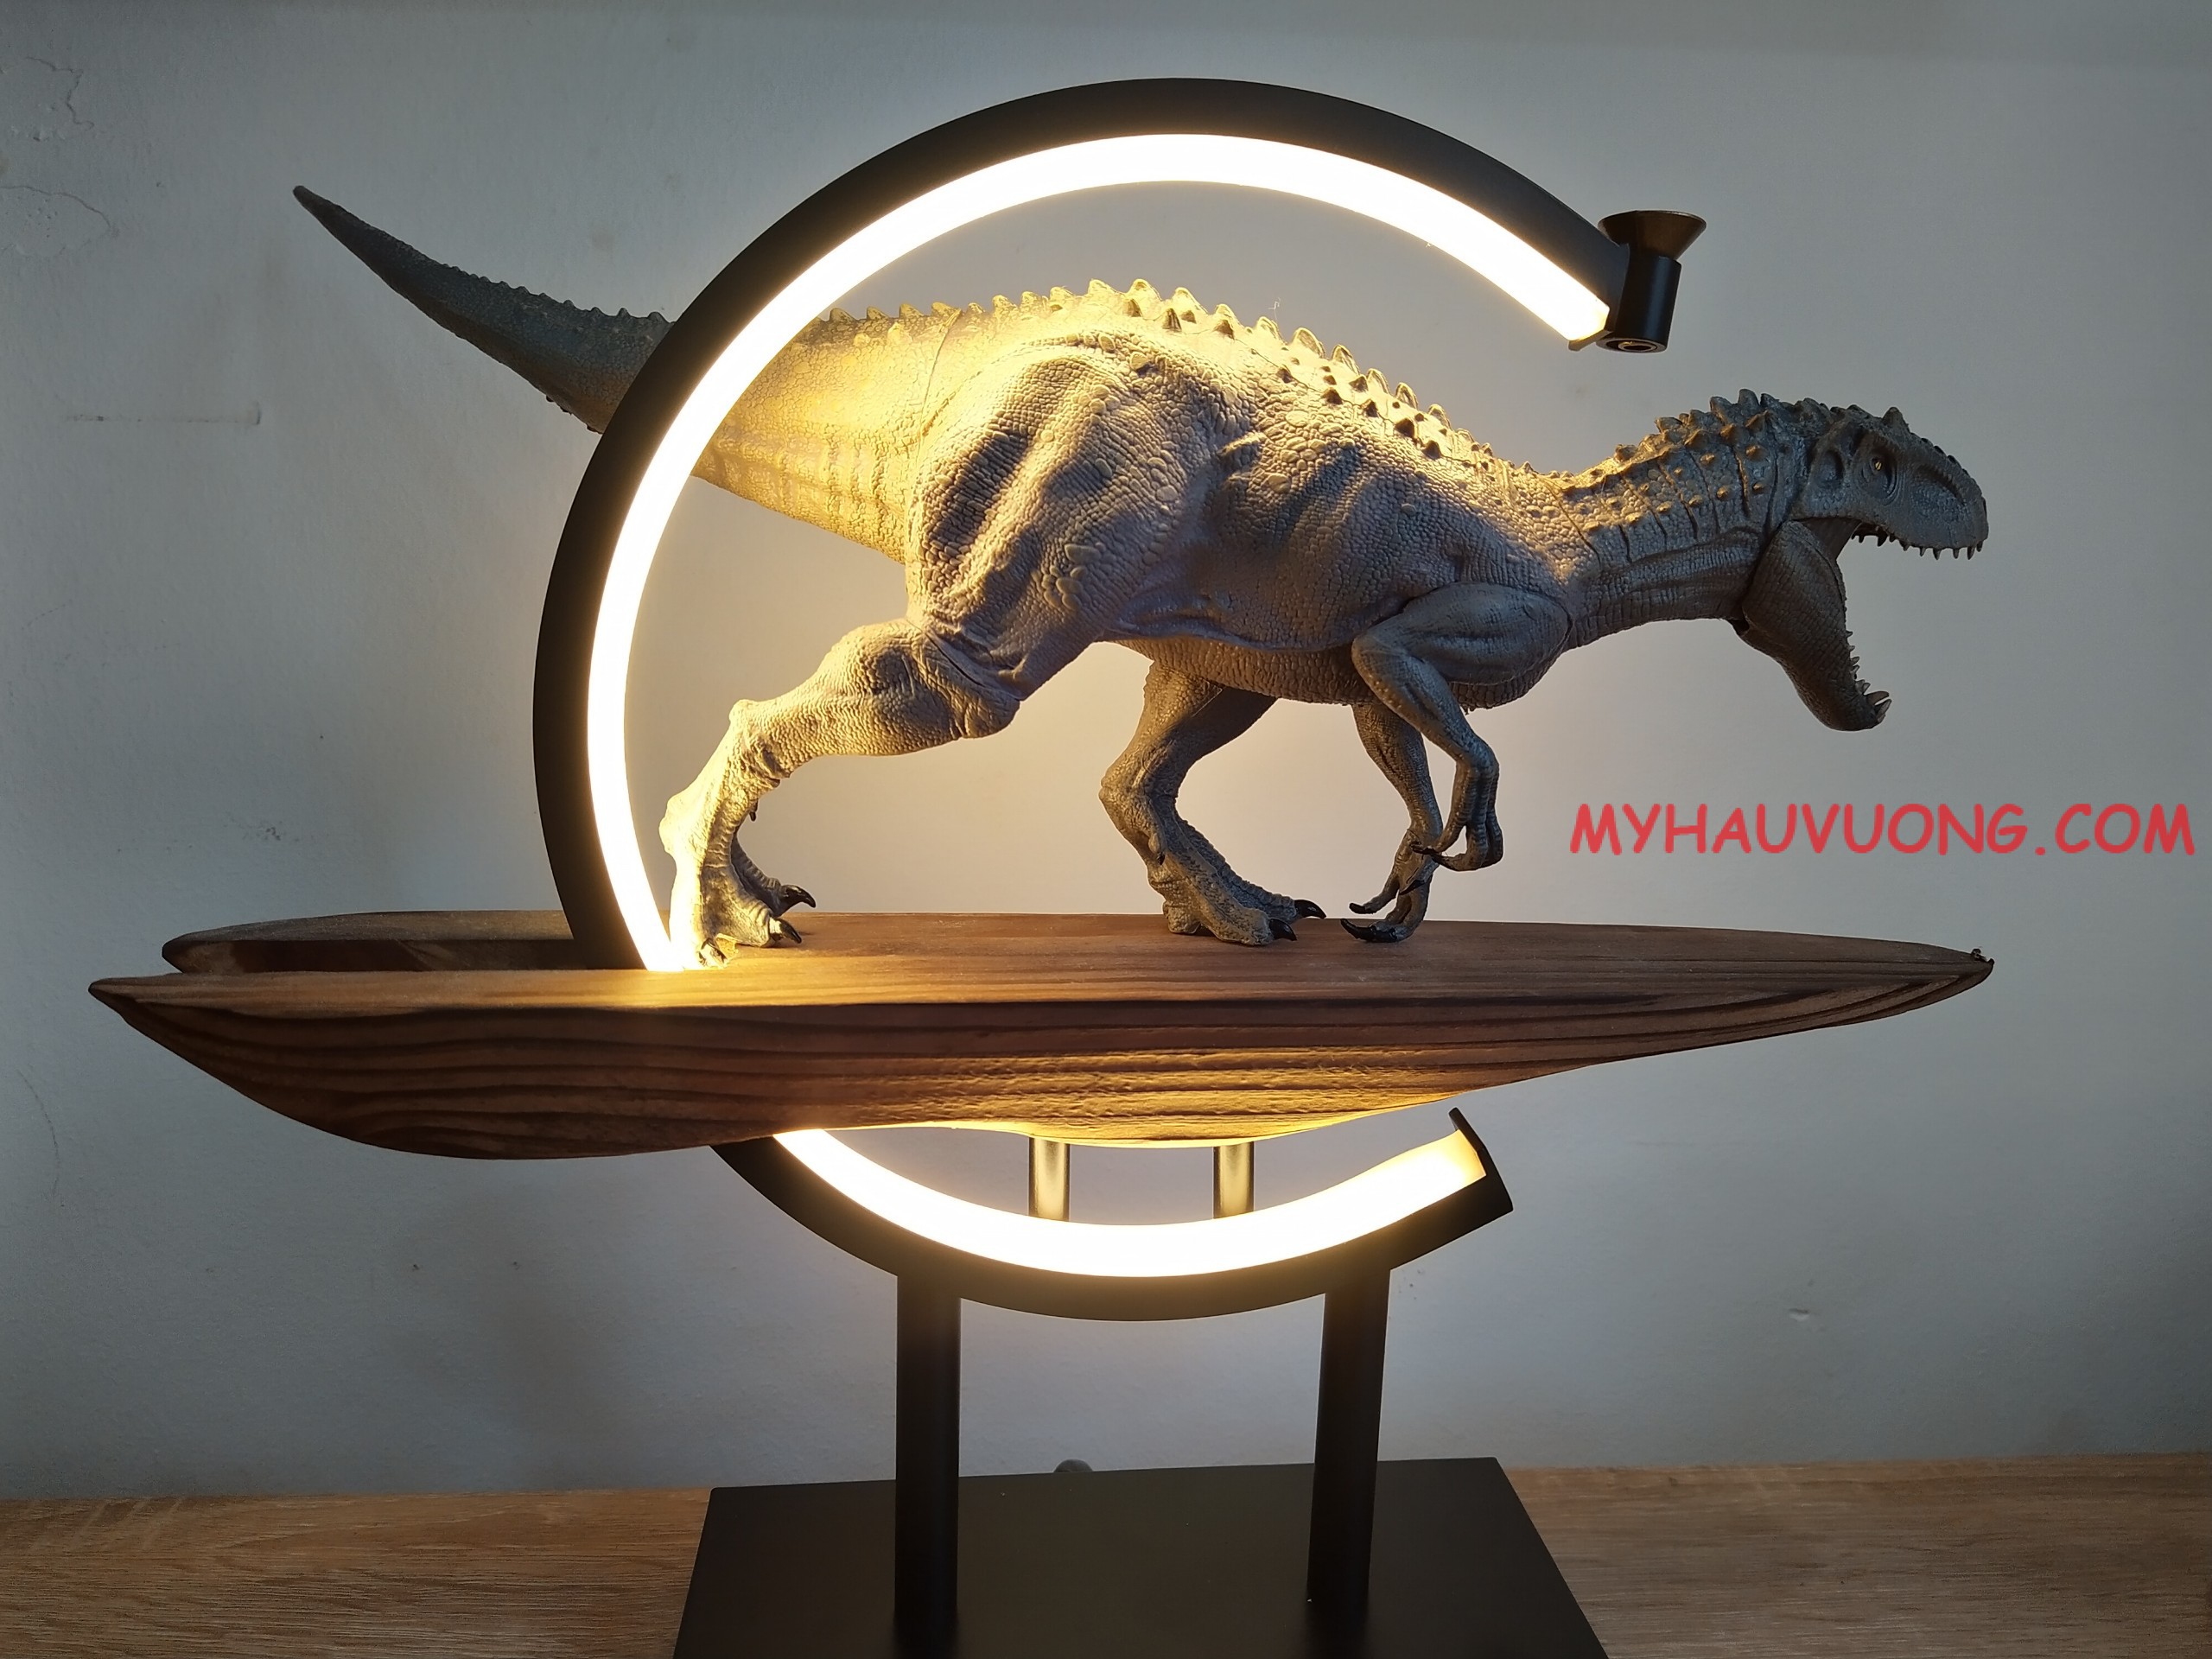 Đồ Chơi Khủng Long Indominus Rex 2021 CÓ TIẾNG GẦM Phiên Bản Màu Nâu Đen Jurassic  World Hãng Lele  Shopee Việt Nam